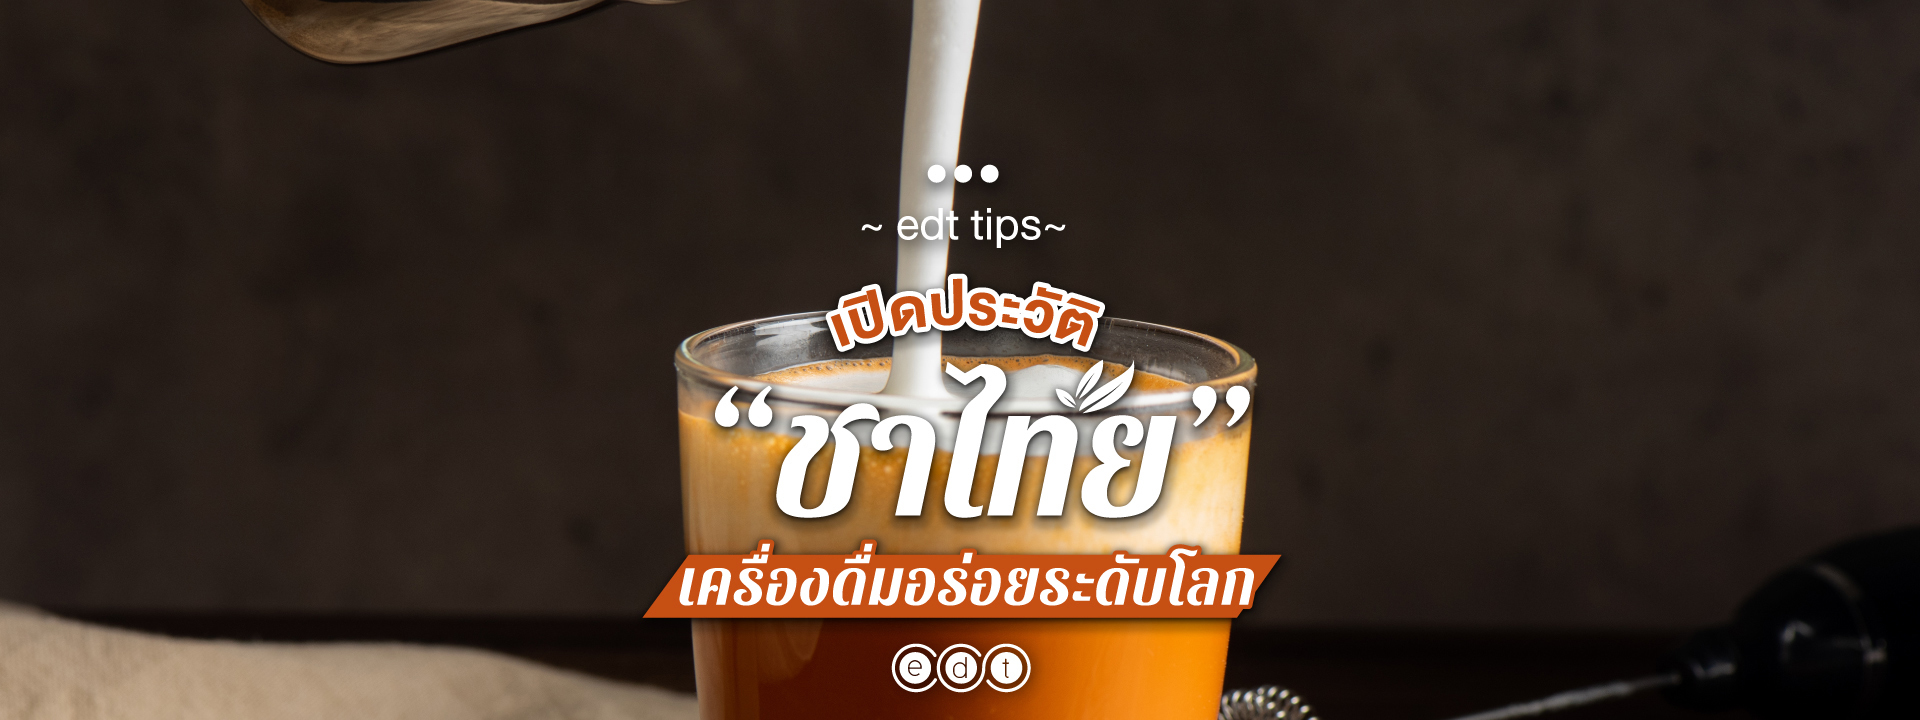 เปิดประวัติ “ชาไทย” เครื่องดื่มอร่อยระดับโลก